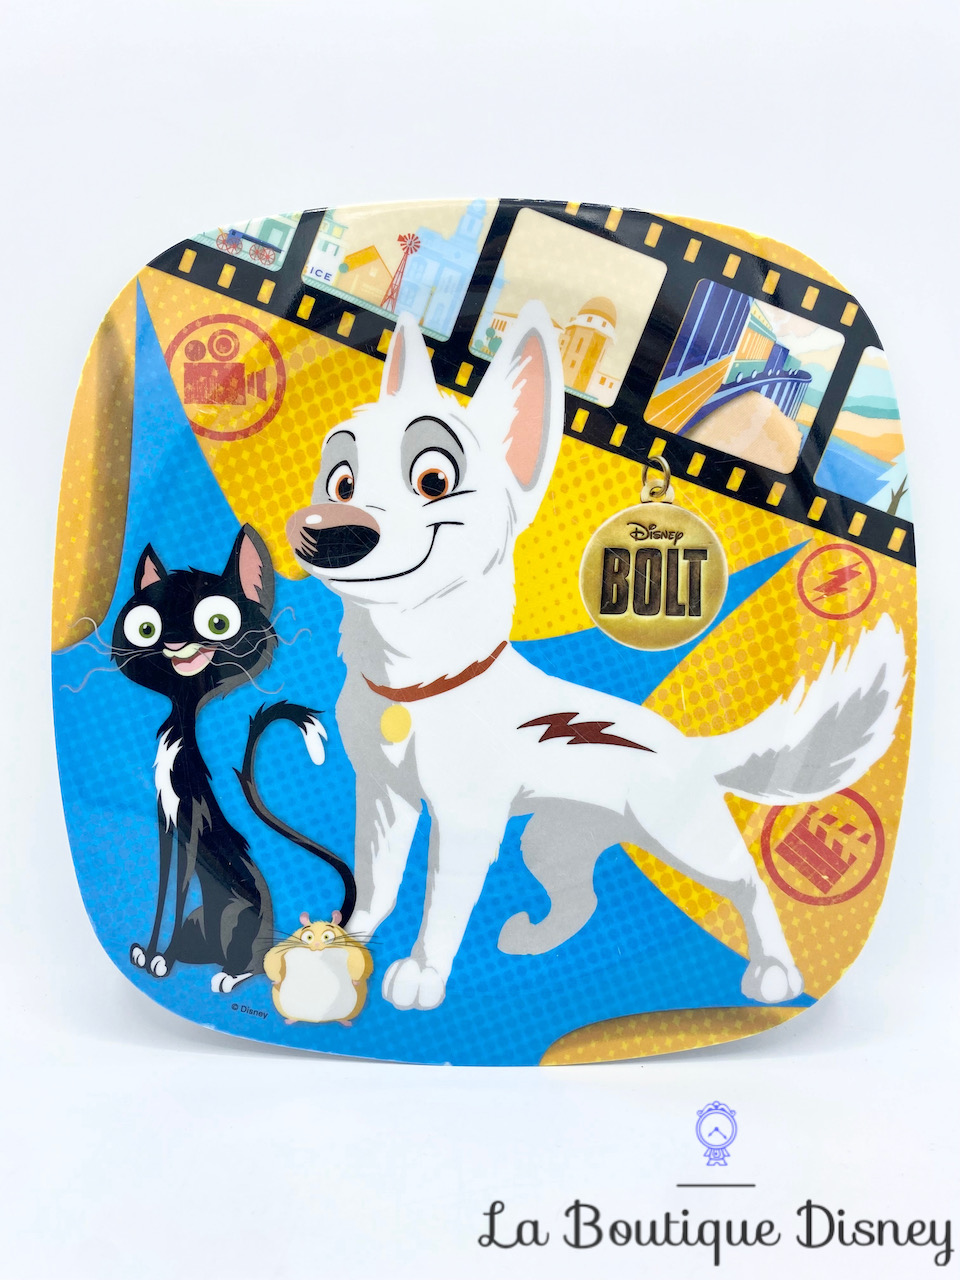 Assiette Volt Star malgré lui Disney Spel Home Presence plastique chien chat